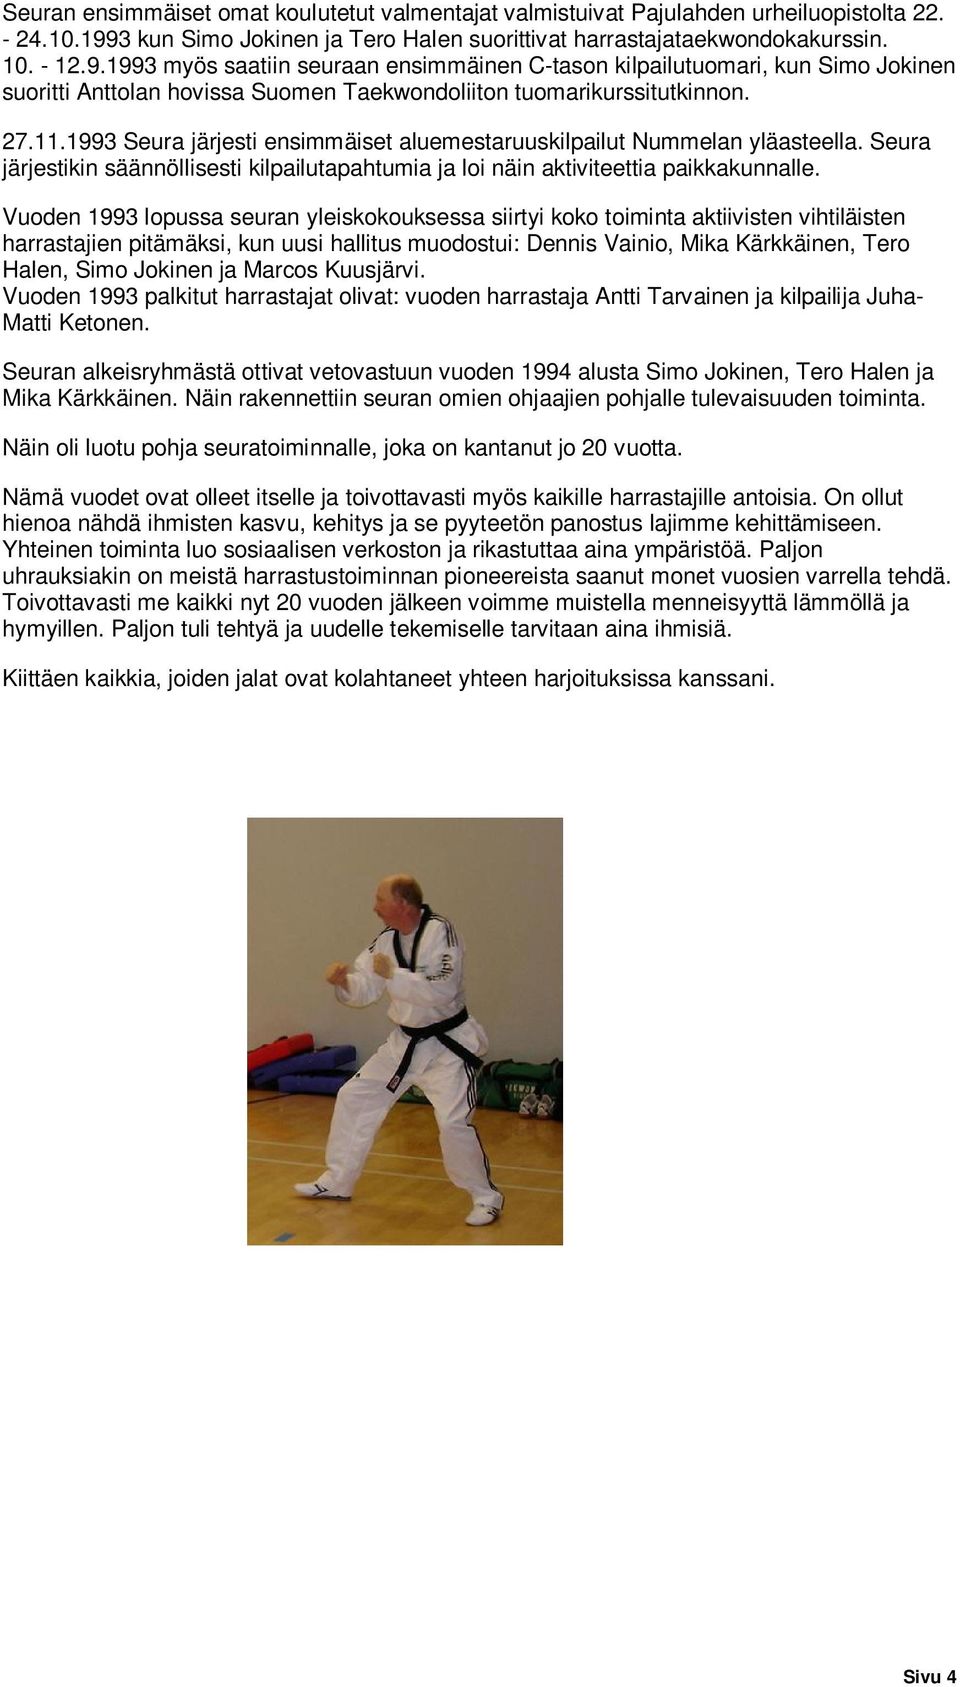 1993 myös saatiin seuraan ensimmäinen C-tason kilpailutuomari, kun Simo Jokinen suoritti Anttolan hovissa Suomen Taekwondoliiton tuomarikurssitutkinnon. 27.11.